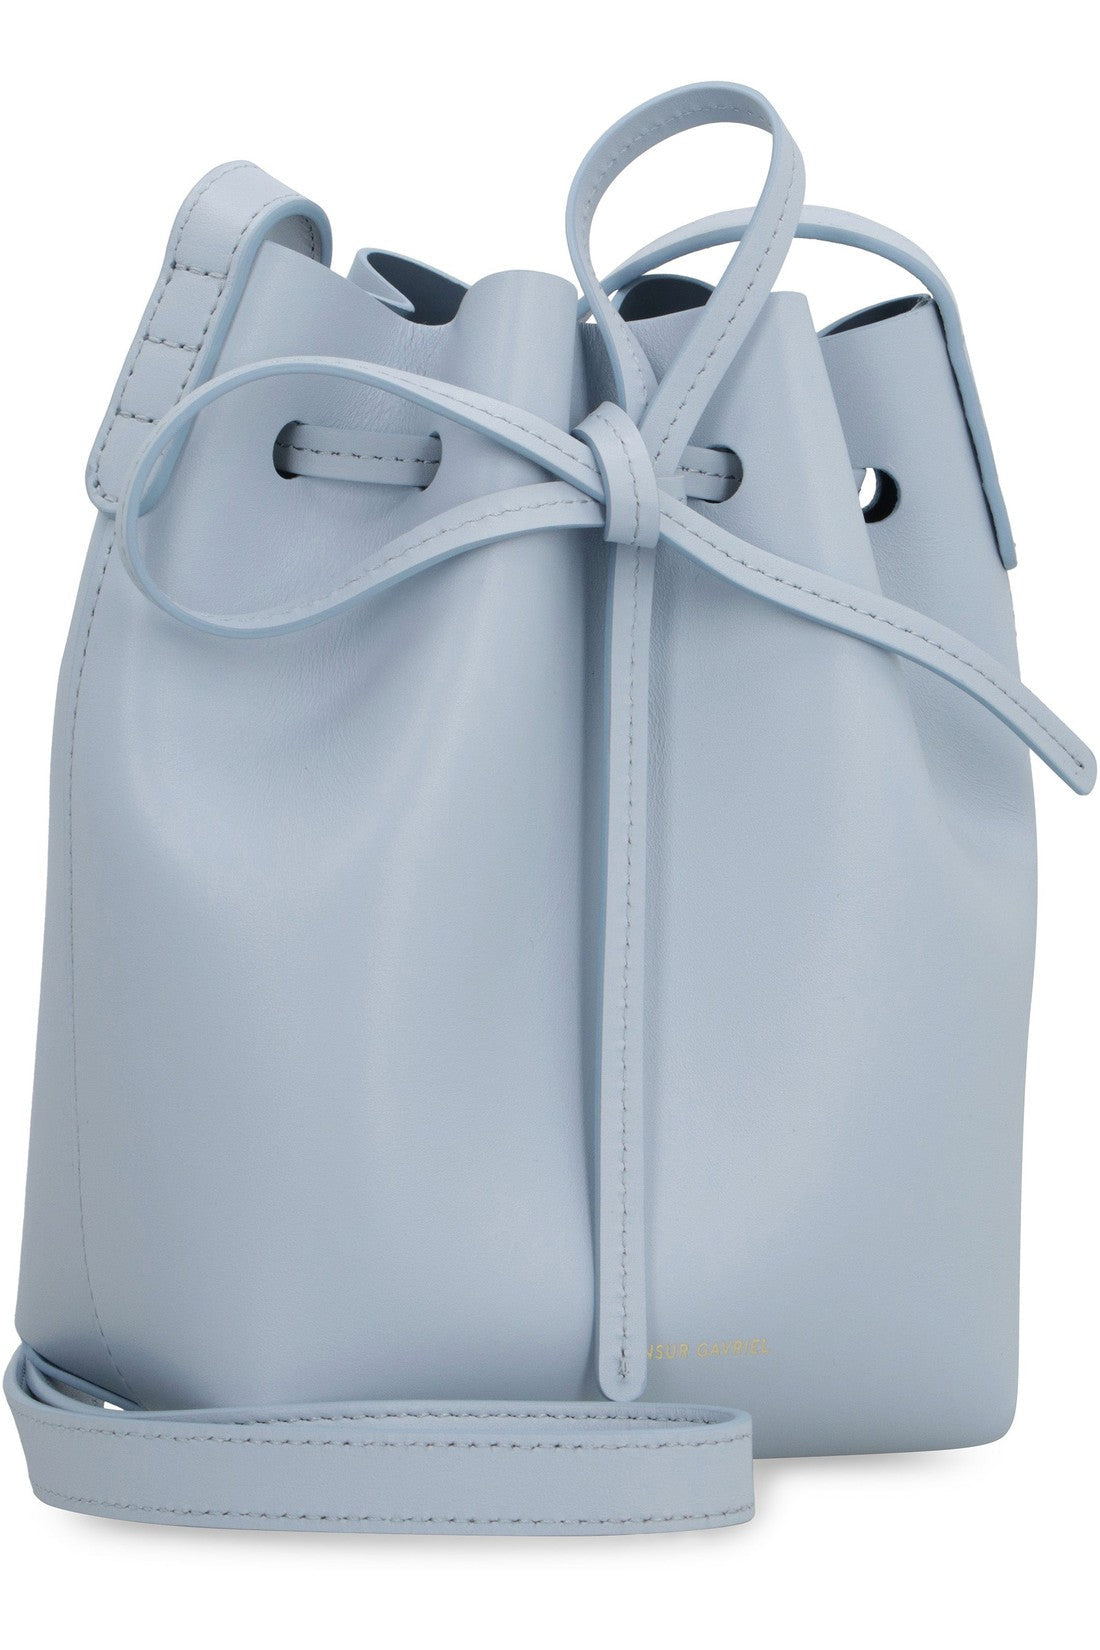 Mansur Gavriel-OUTLET-SALE-Bucket leather mini crossbody bag-ARCHIVIST